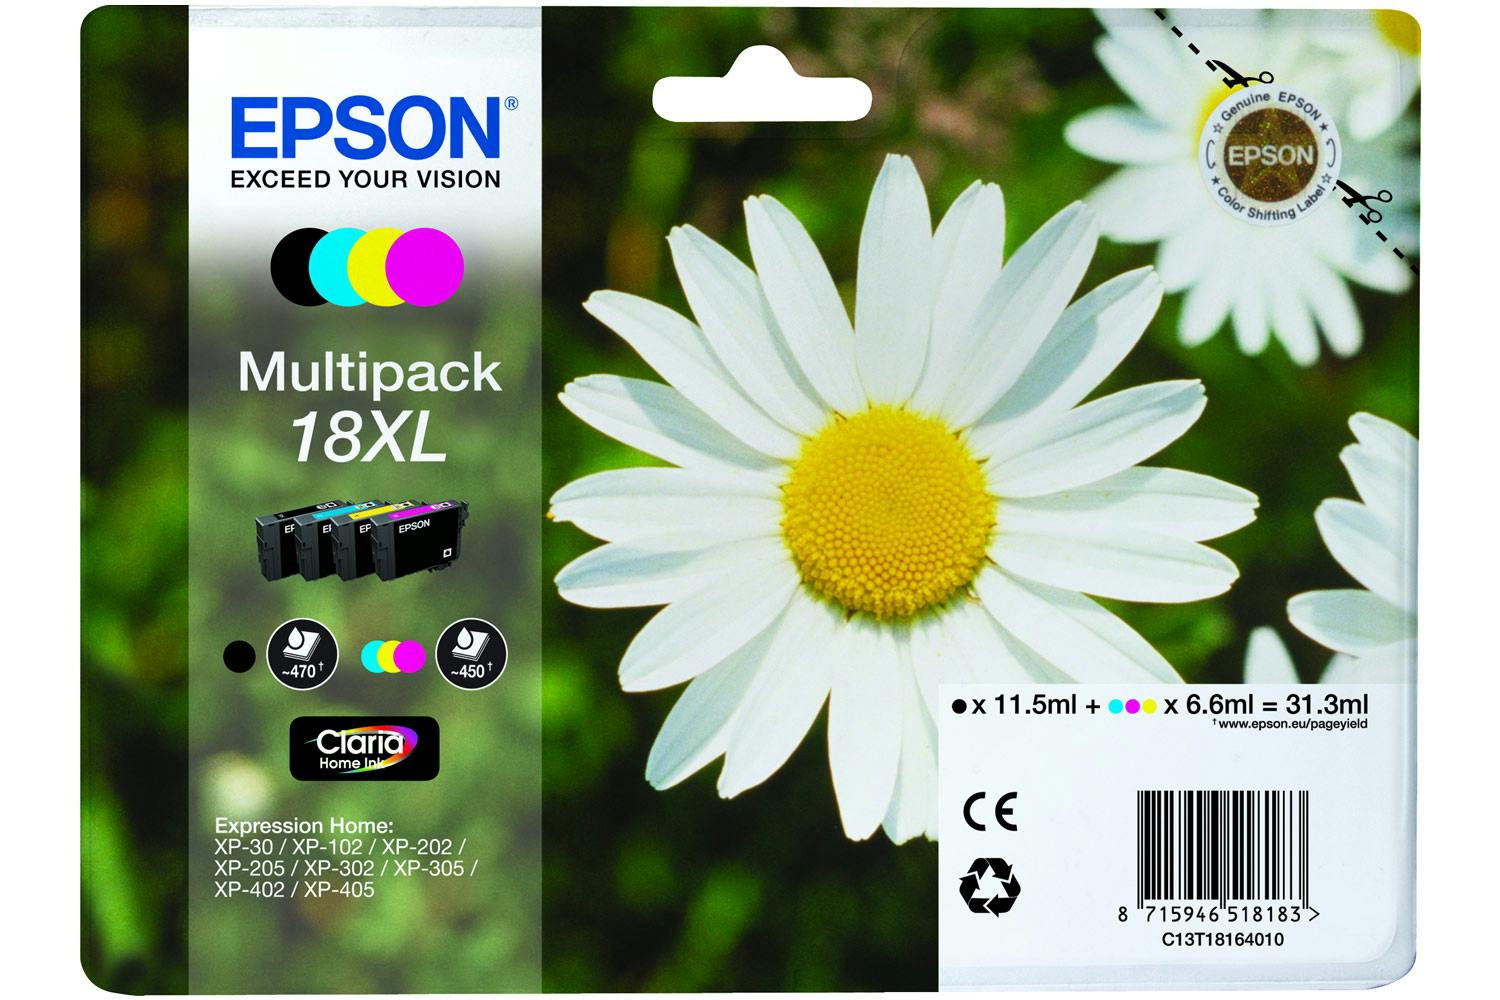 Epson XL Daisy Ink Multipack